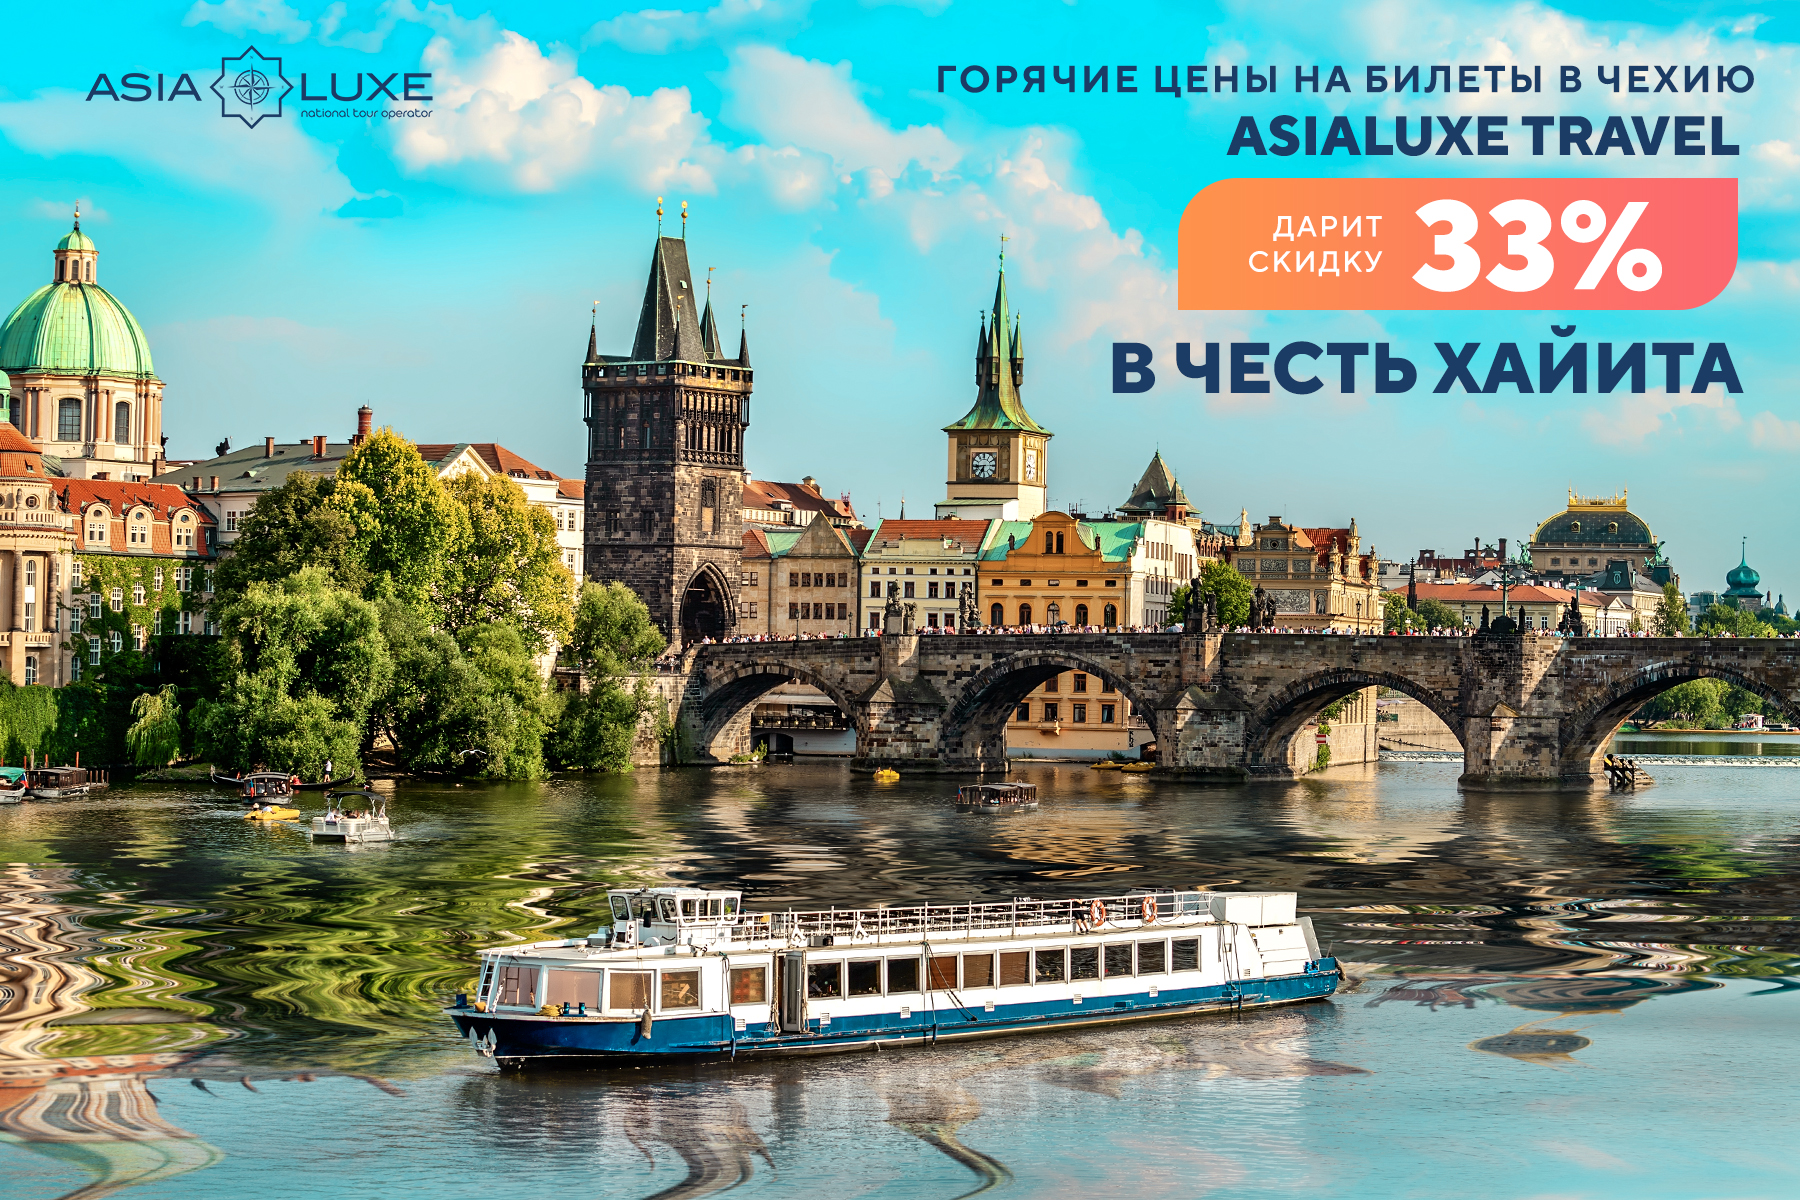 Горячие цены на билеты в Чехию: Asialuxe Travel дарит скидку 33% в честь Рамазан хайита